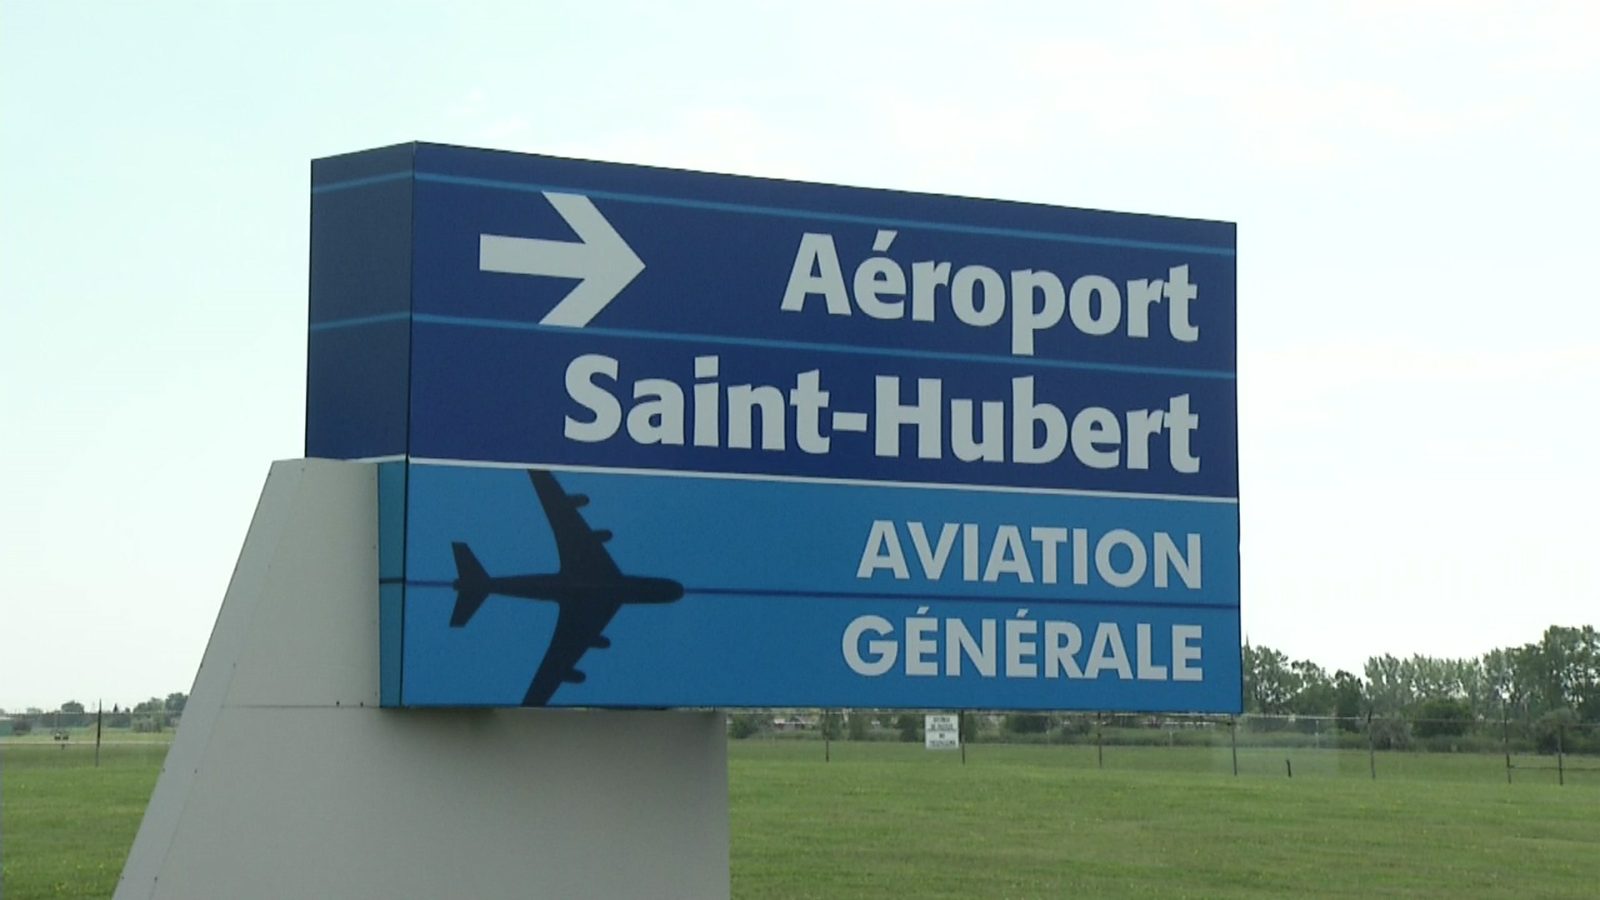 L’Aéroport Montréal Saint-Hubert ne devrait pas être plus bruyant à l’ouverture du nouveau terminal